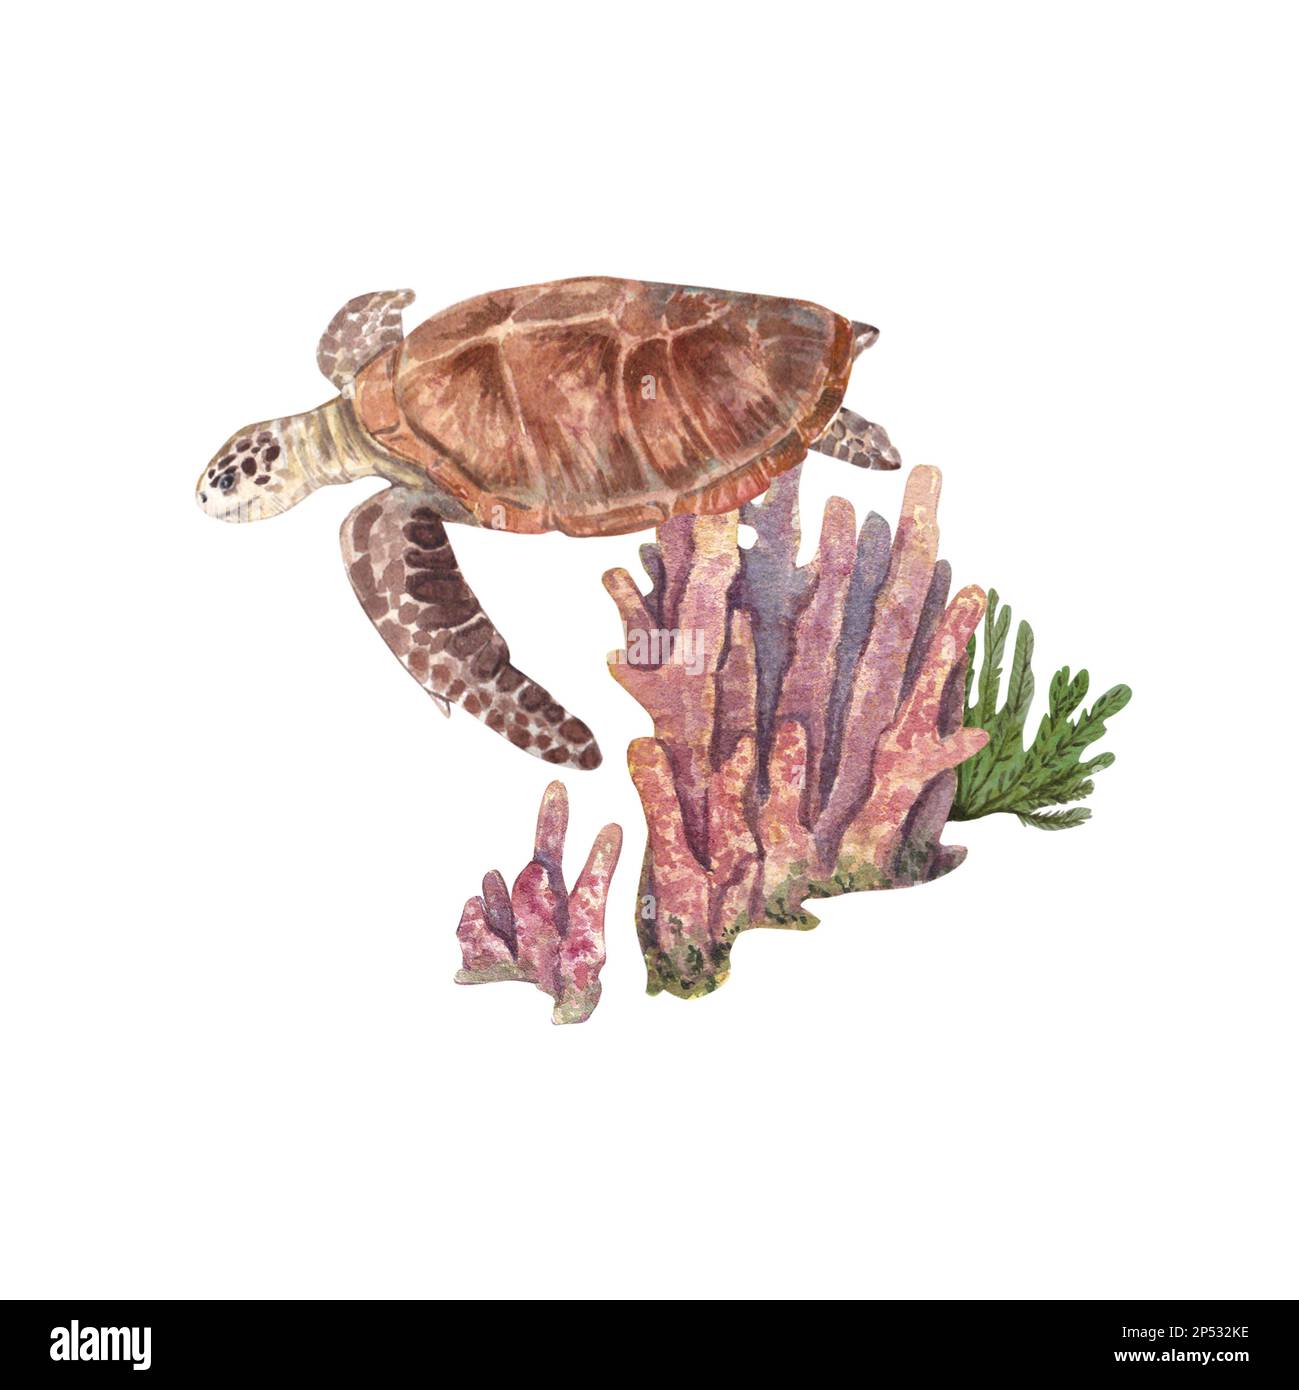 Tortue de mer sur fond de longs coraux roses, surlignés sur fond blanc. Illustration aquarelle d'animaux et de plantes marins. Le dessin i Banque D'Images